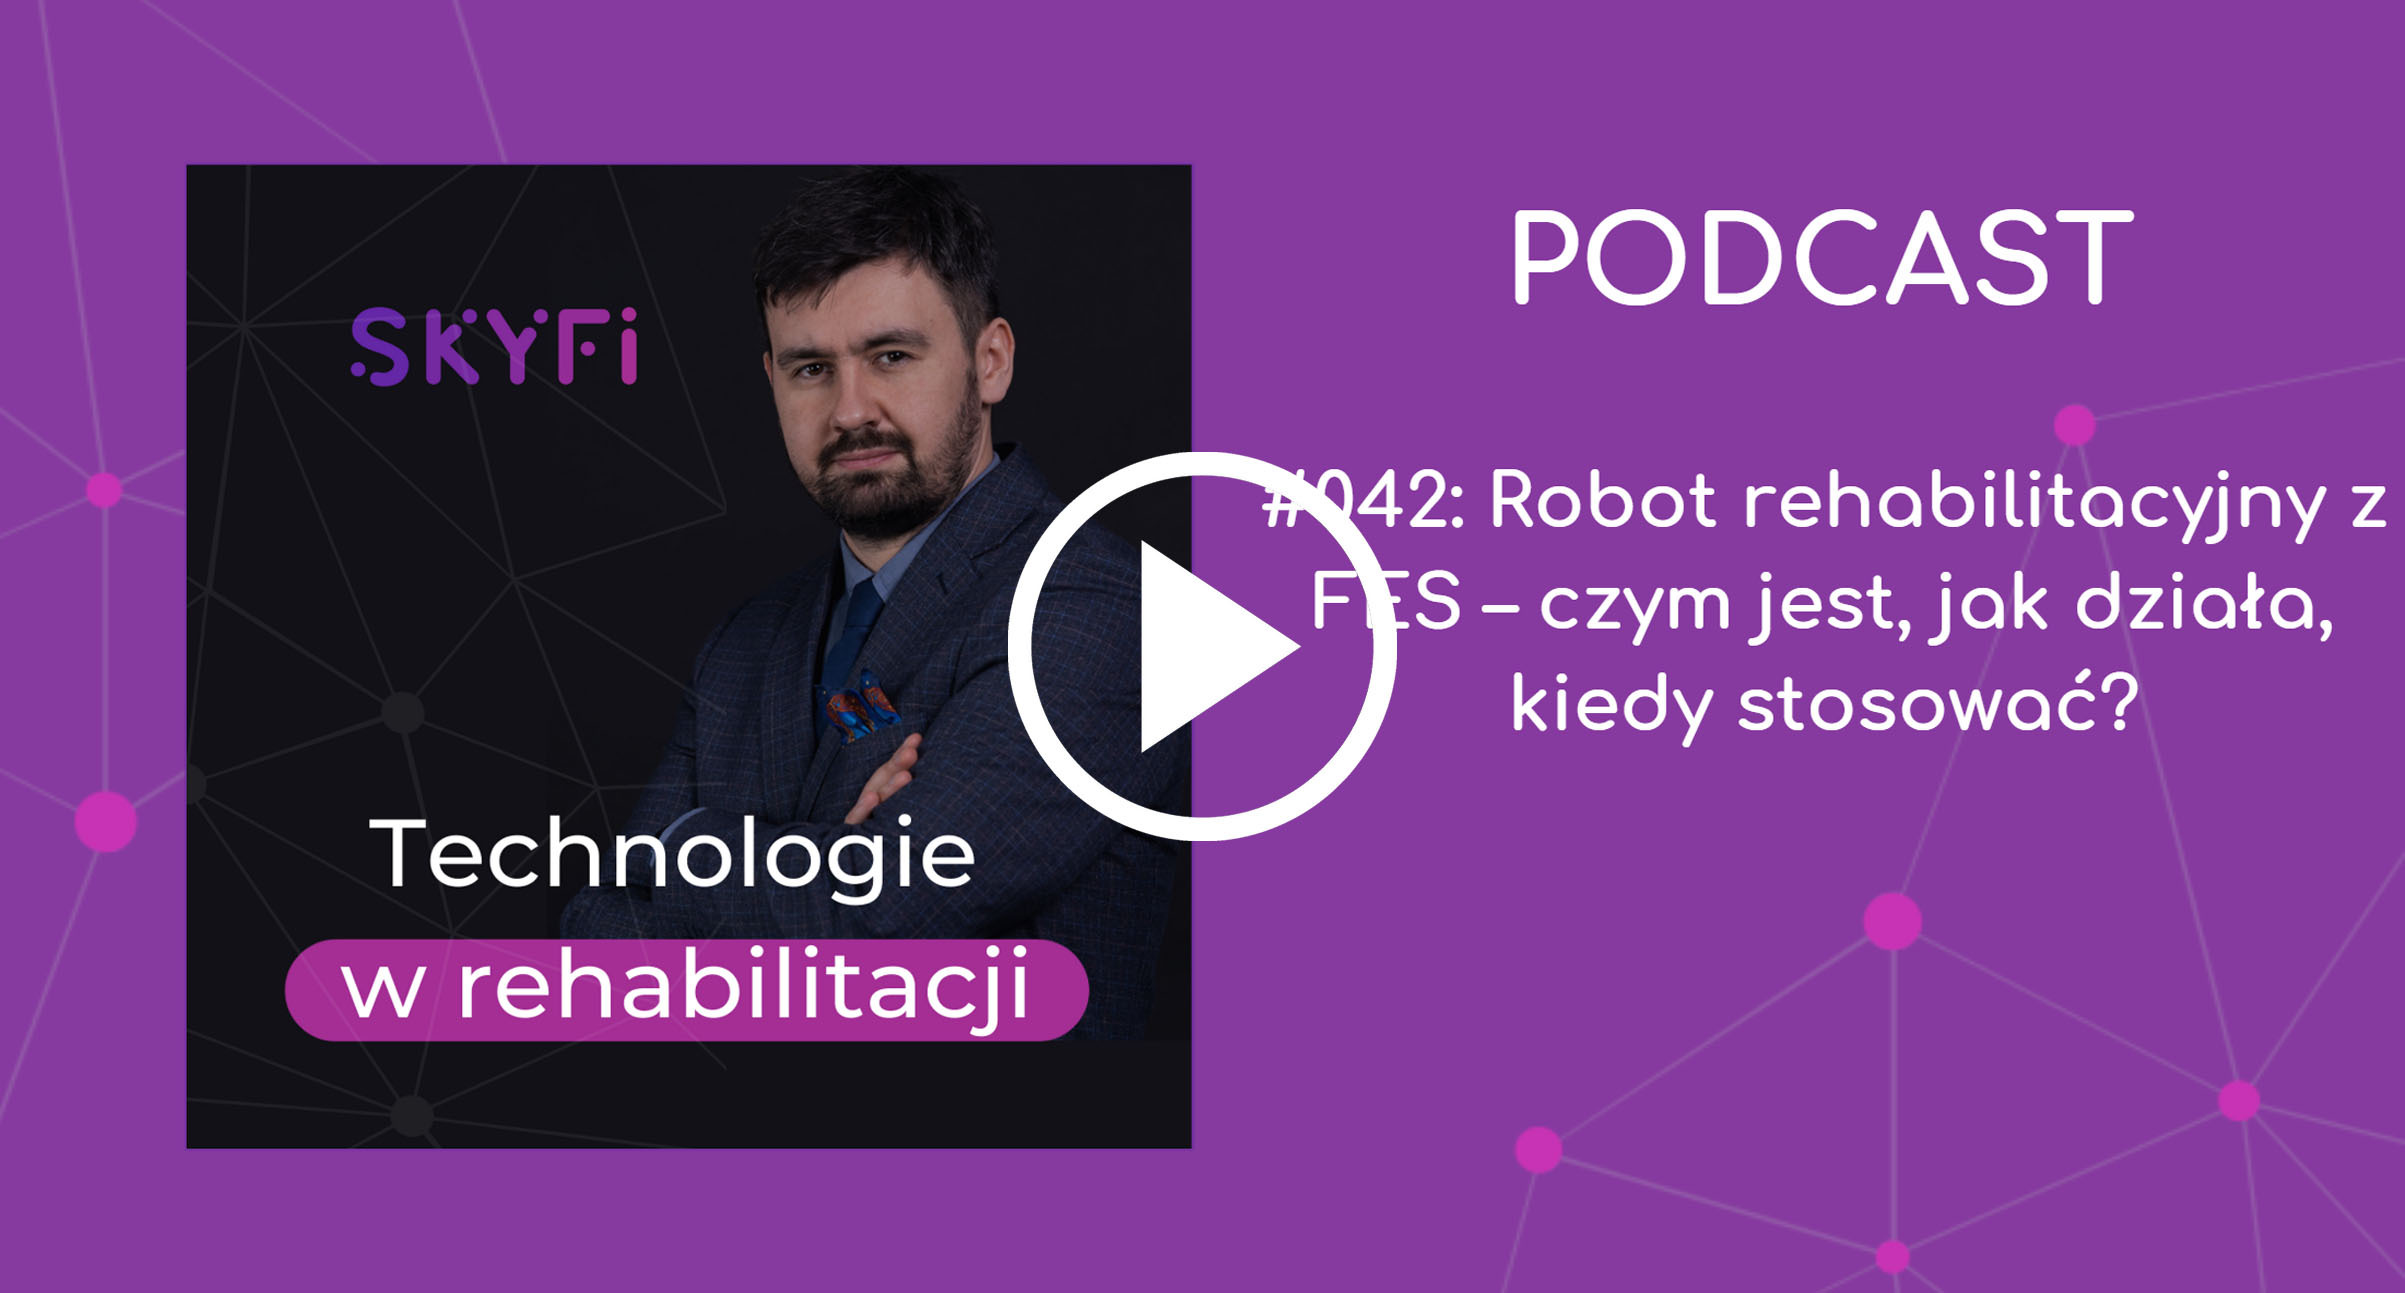 Podcast-42-Robot-rehabilitacyjny-FES-rehabilitacja-robotyczna-Skyfi